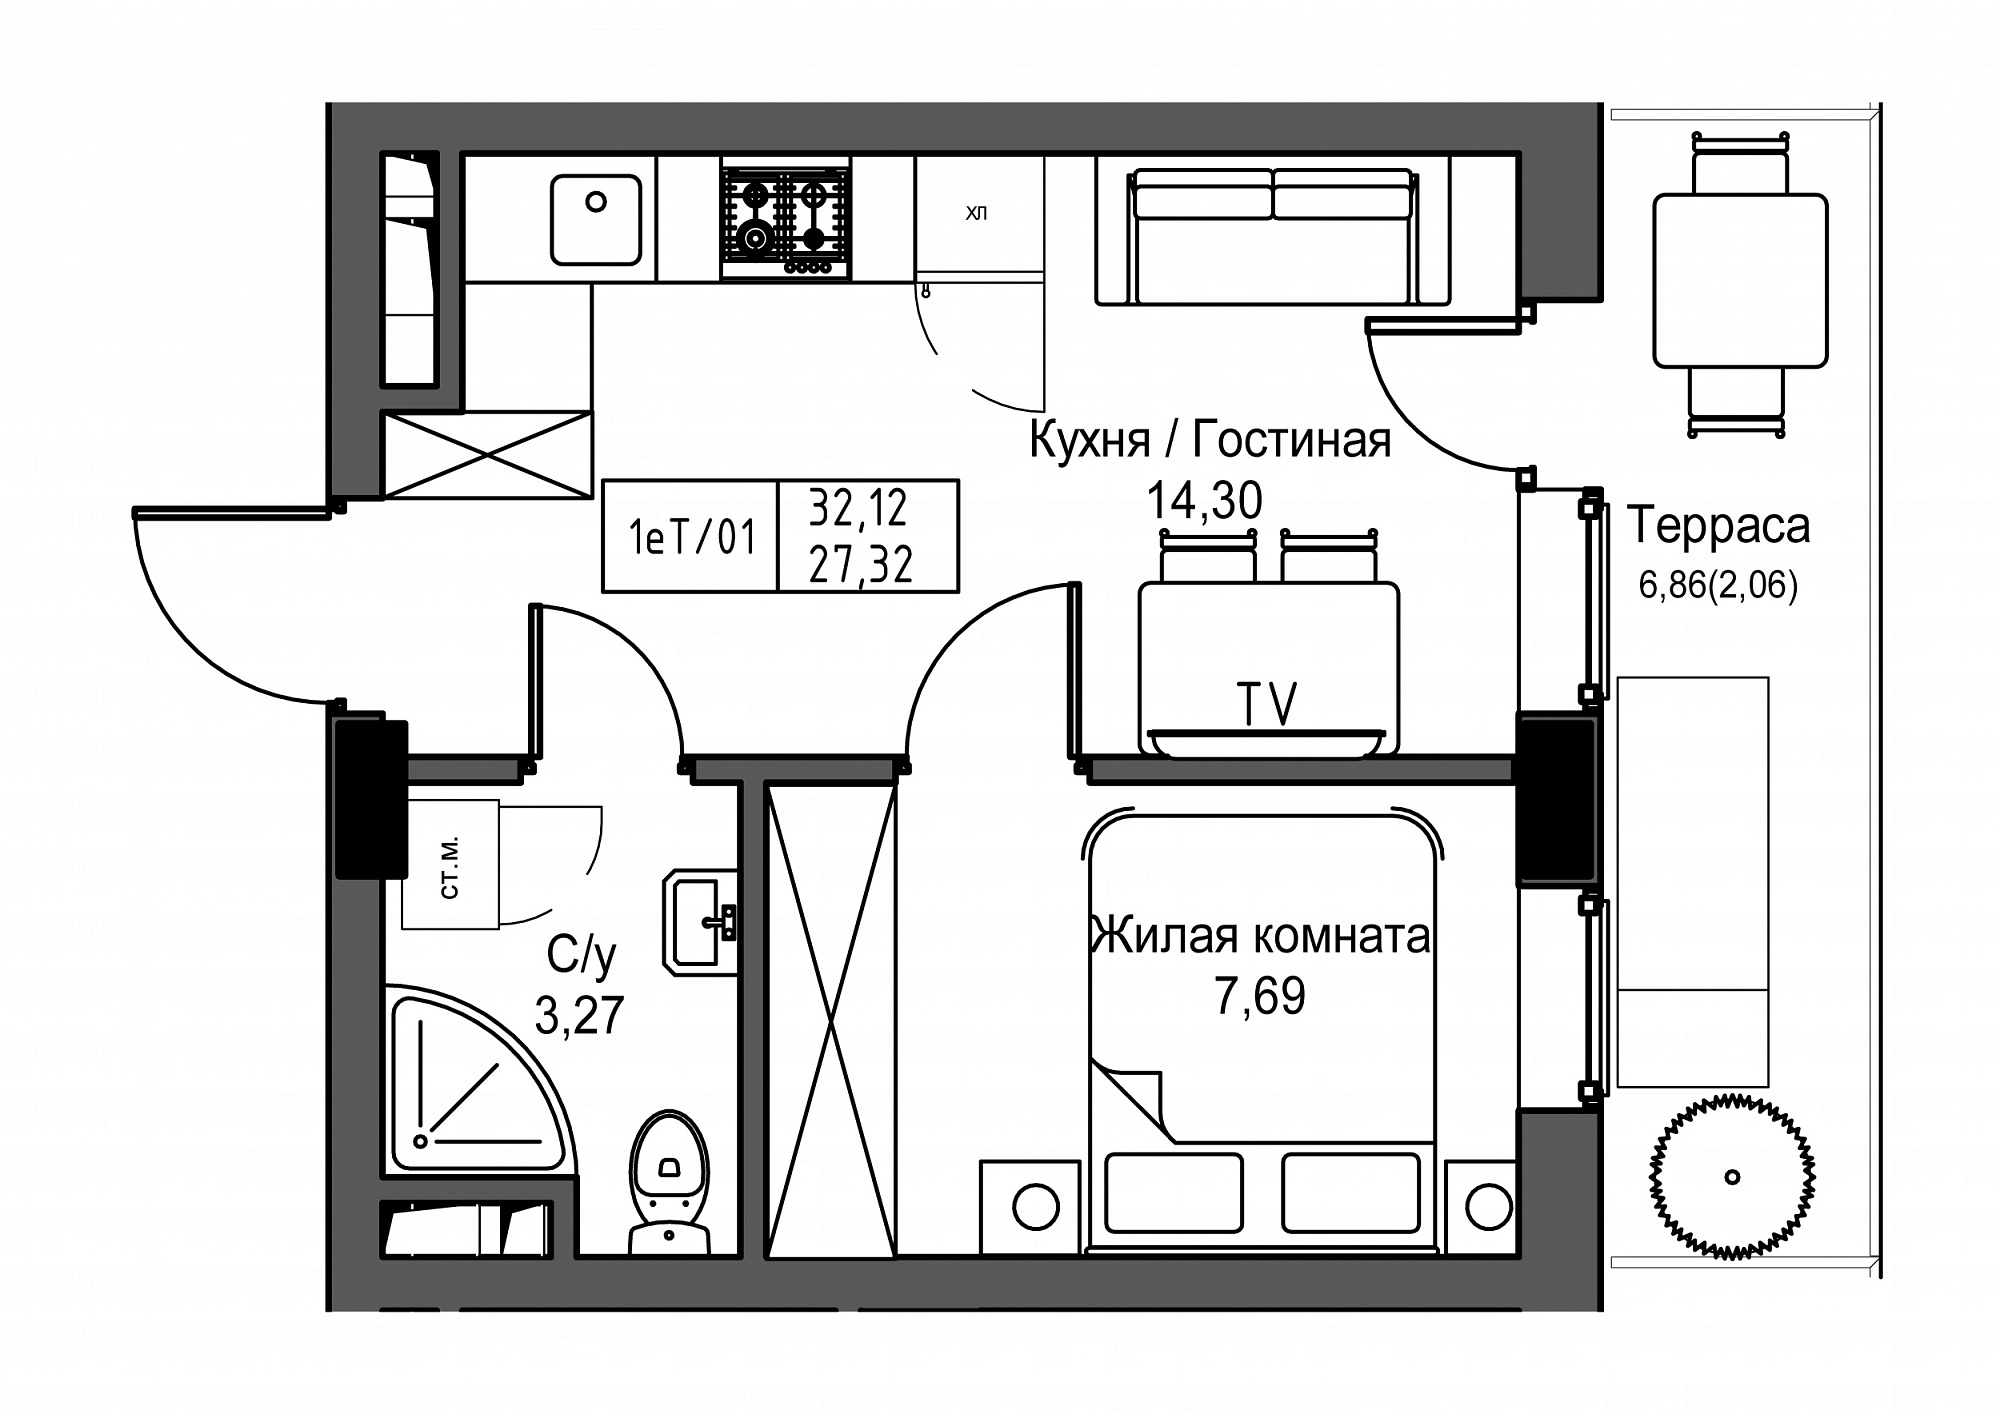 Планировка 1-к квартира площей 27.32м2, UM-003-02/0004.